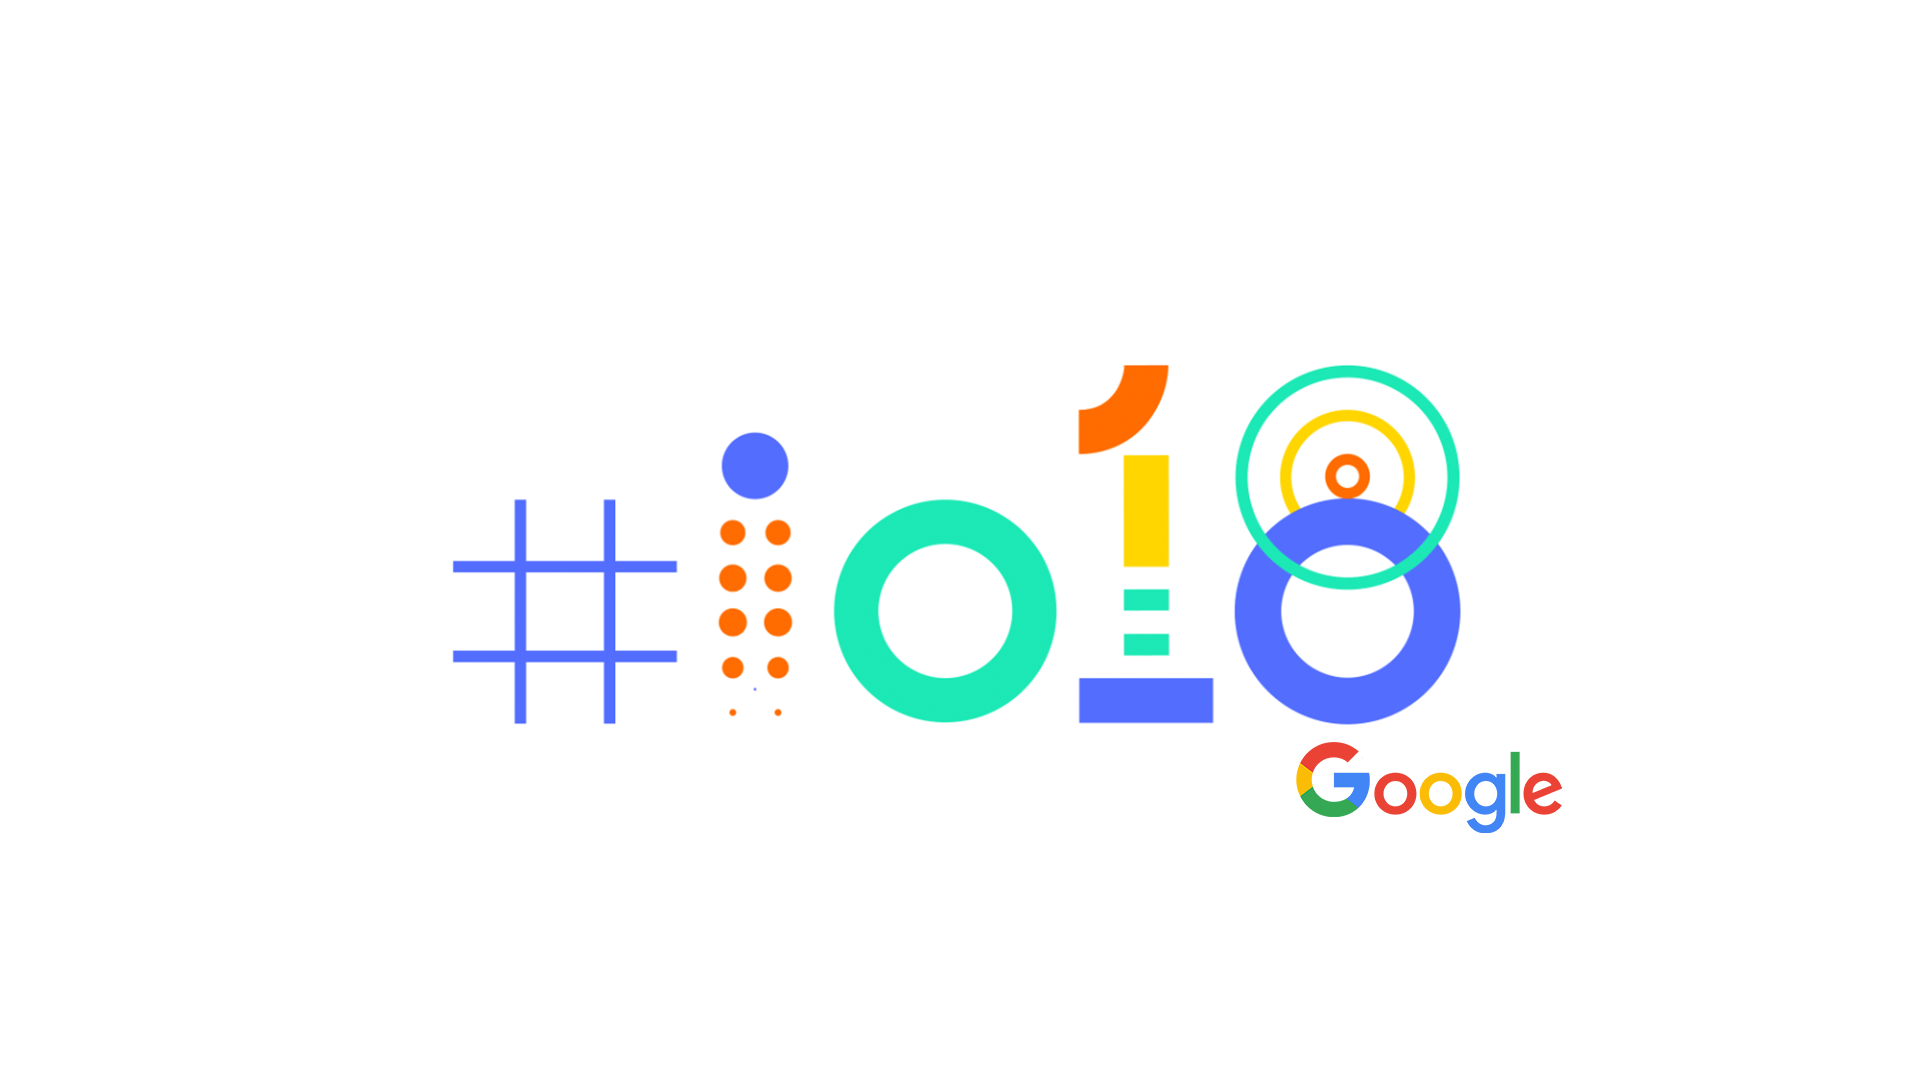 Đây là những gì đang được mong chờ nhất tại sự kiện Google I/O 2018